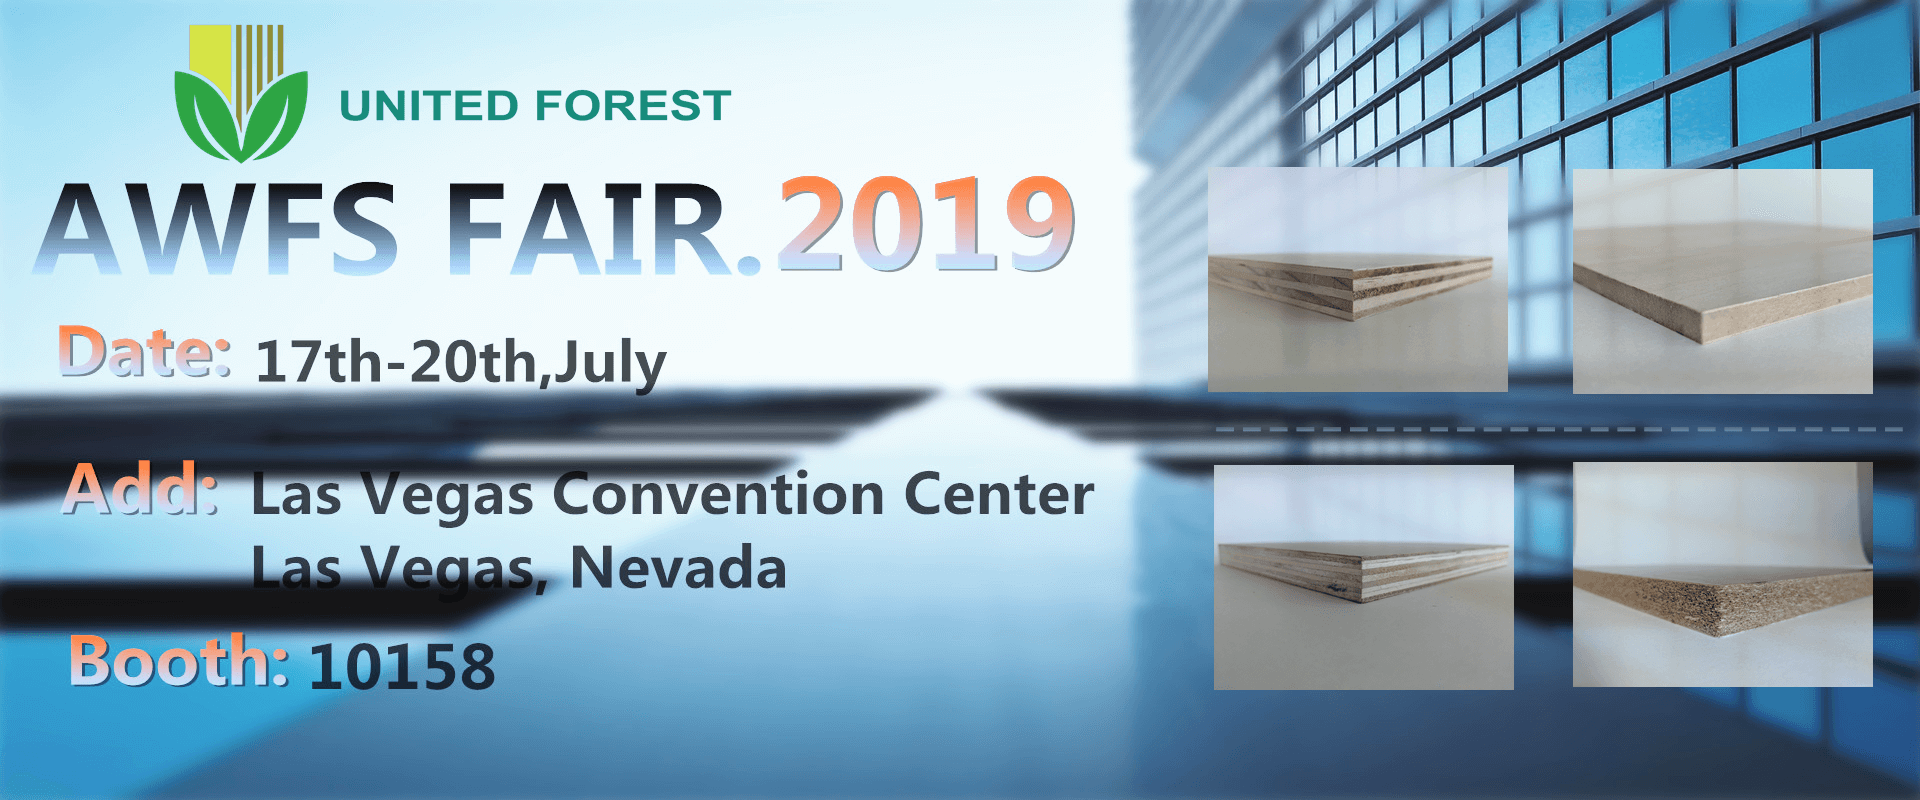 AWFS Fair 17th-20th July,2019  Las Vegas Convention Center,  Las Vegas, Nevada.